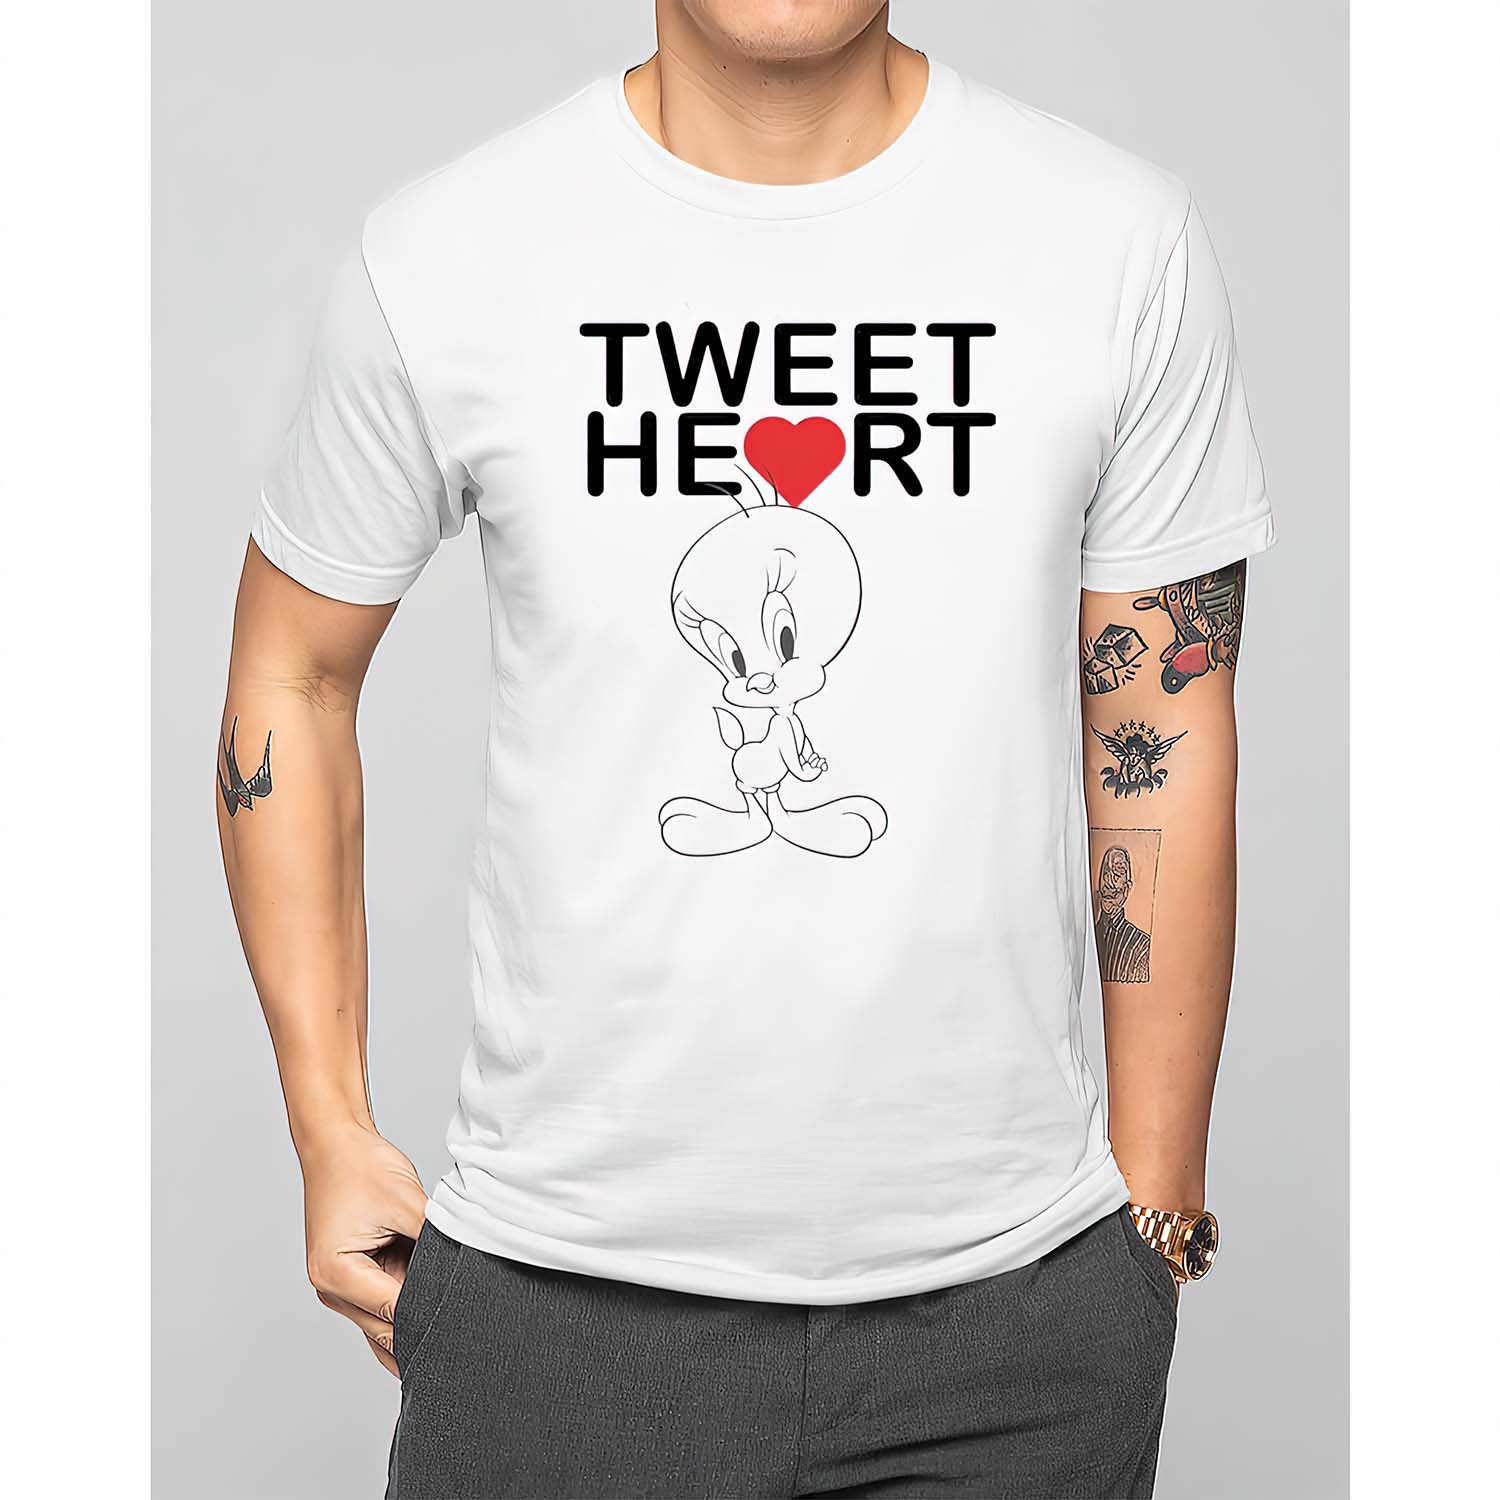 Tweet Heart Shirt